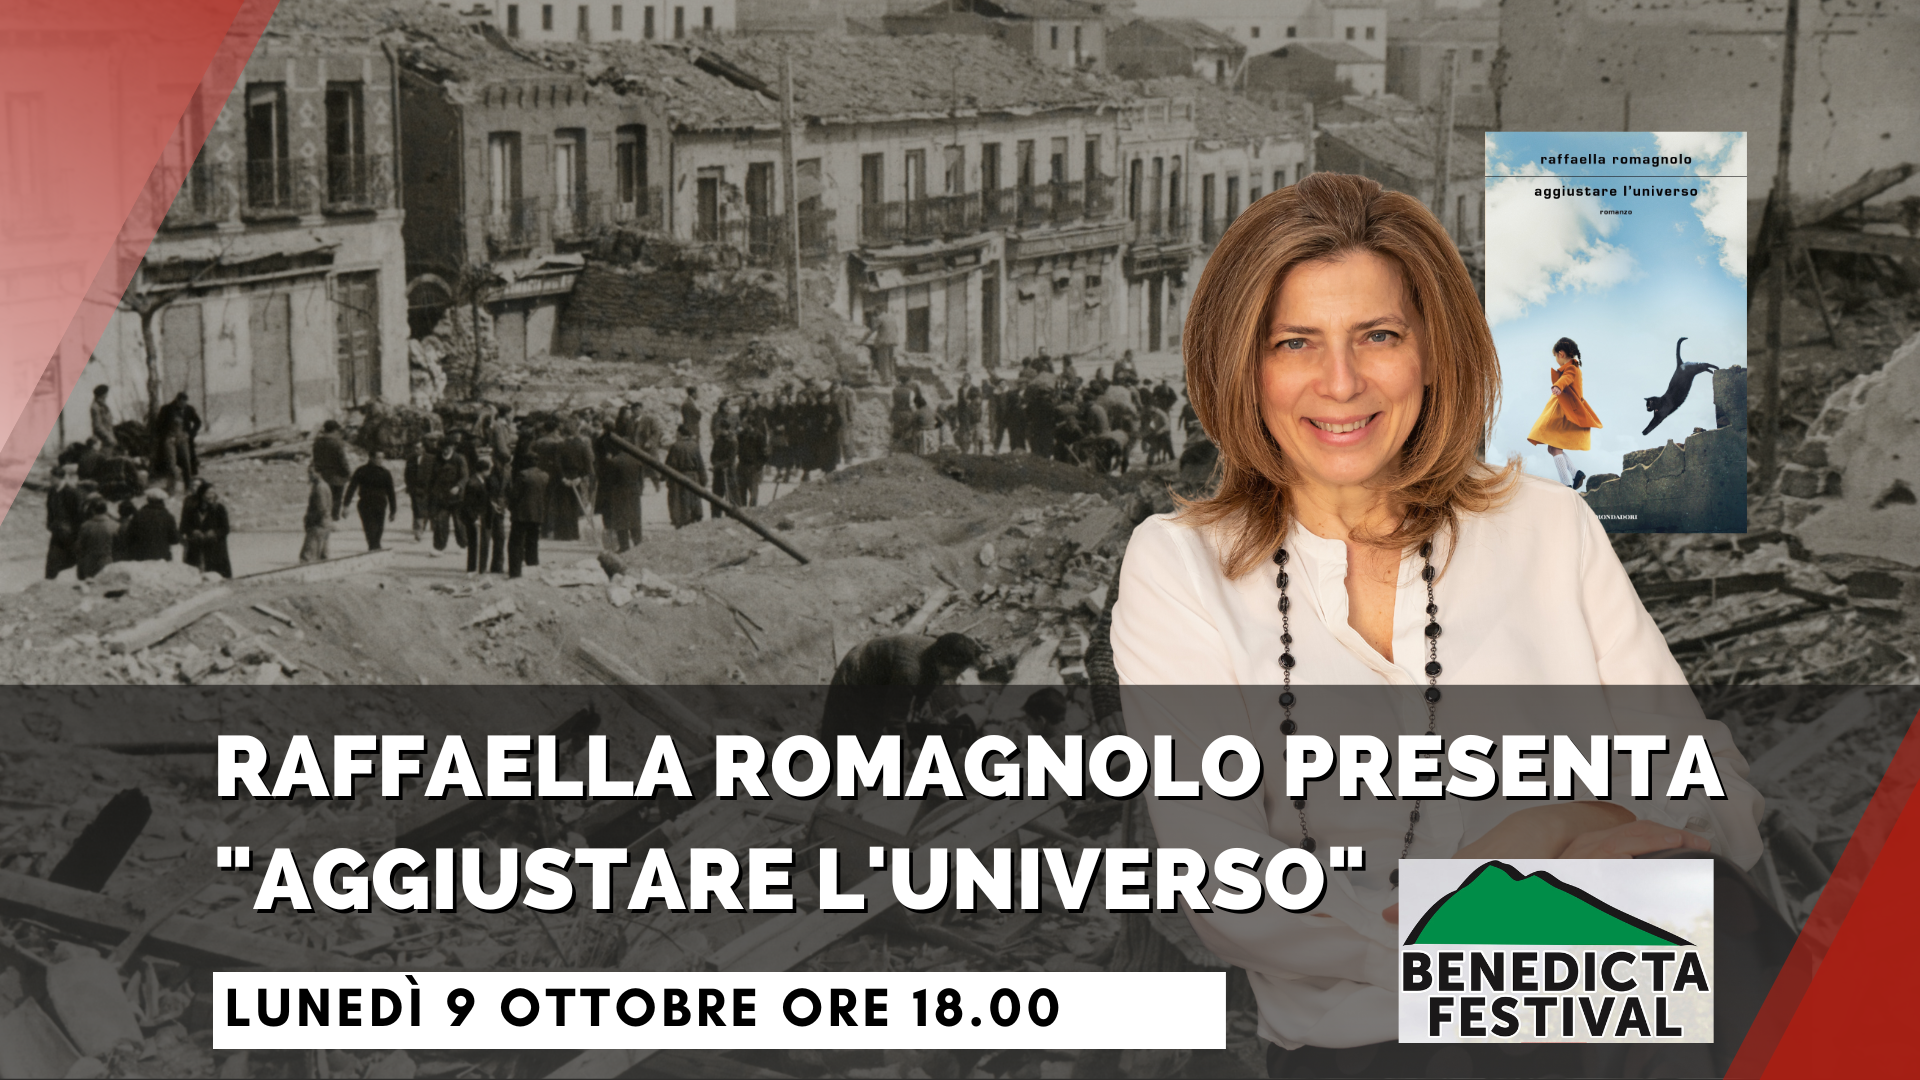 Benedicta Festival – Raffaella Romagnolo presenta “Aggiustare l’universo”